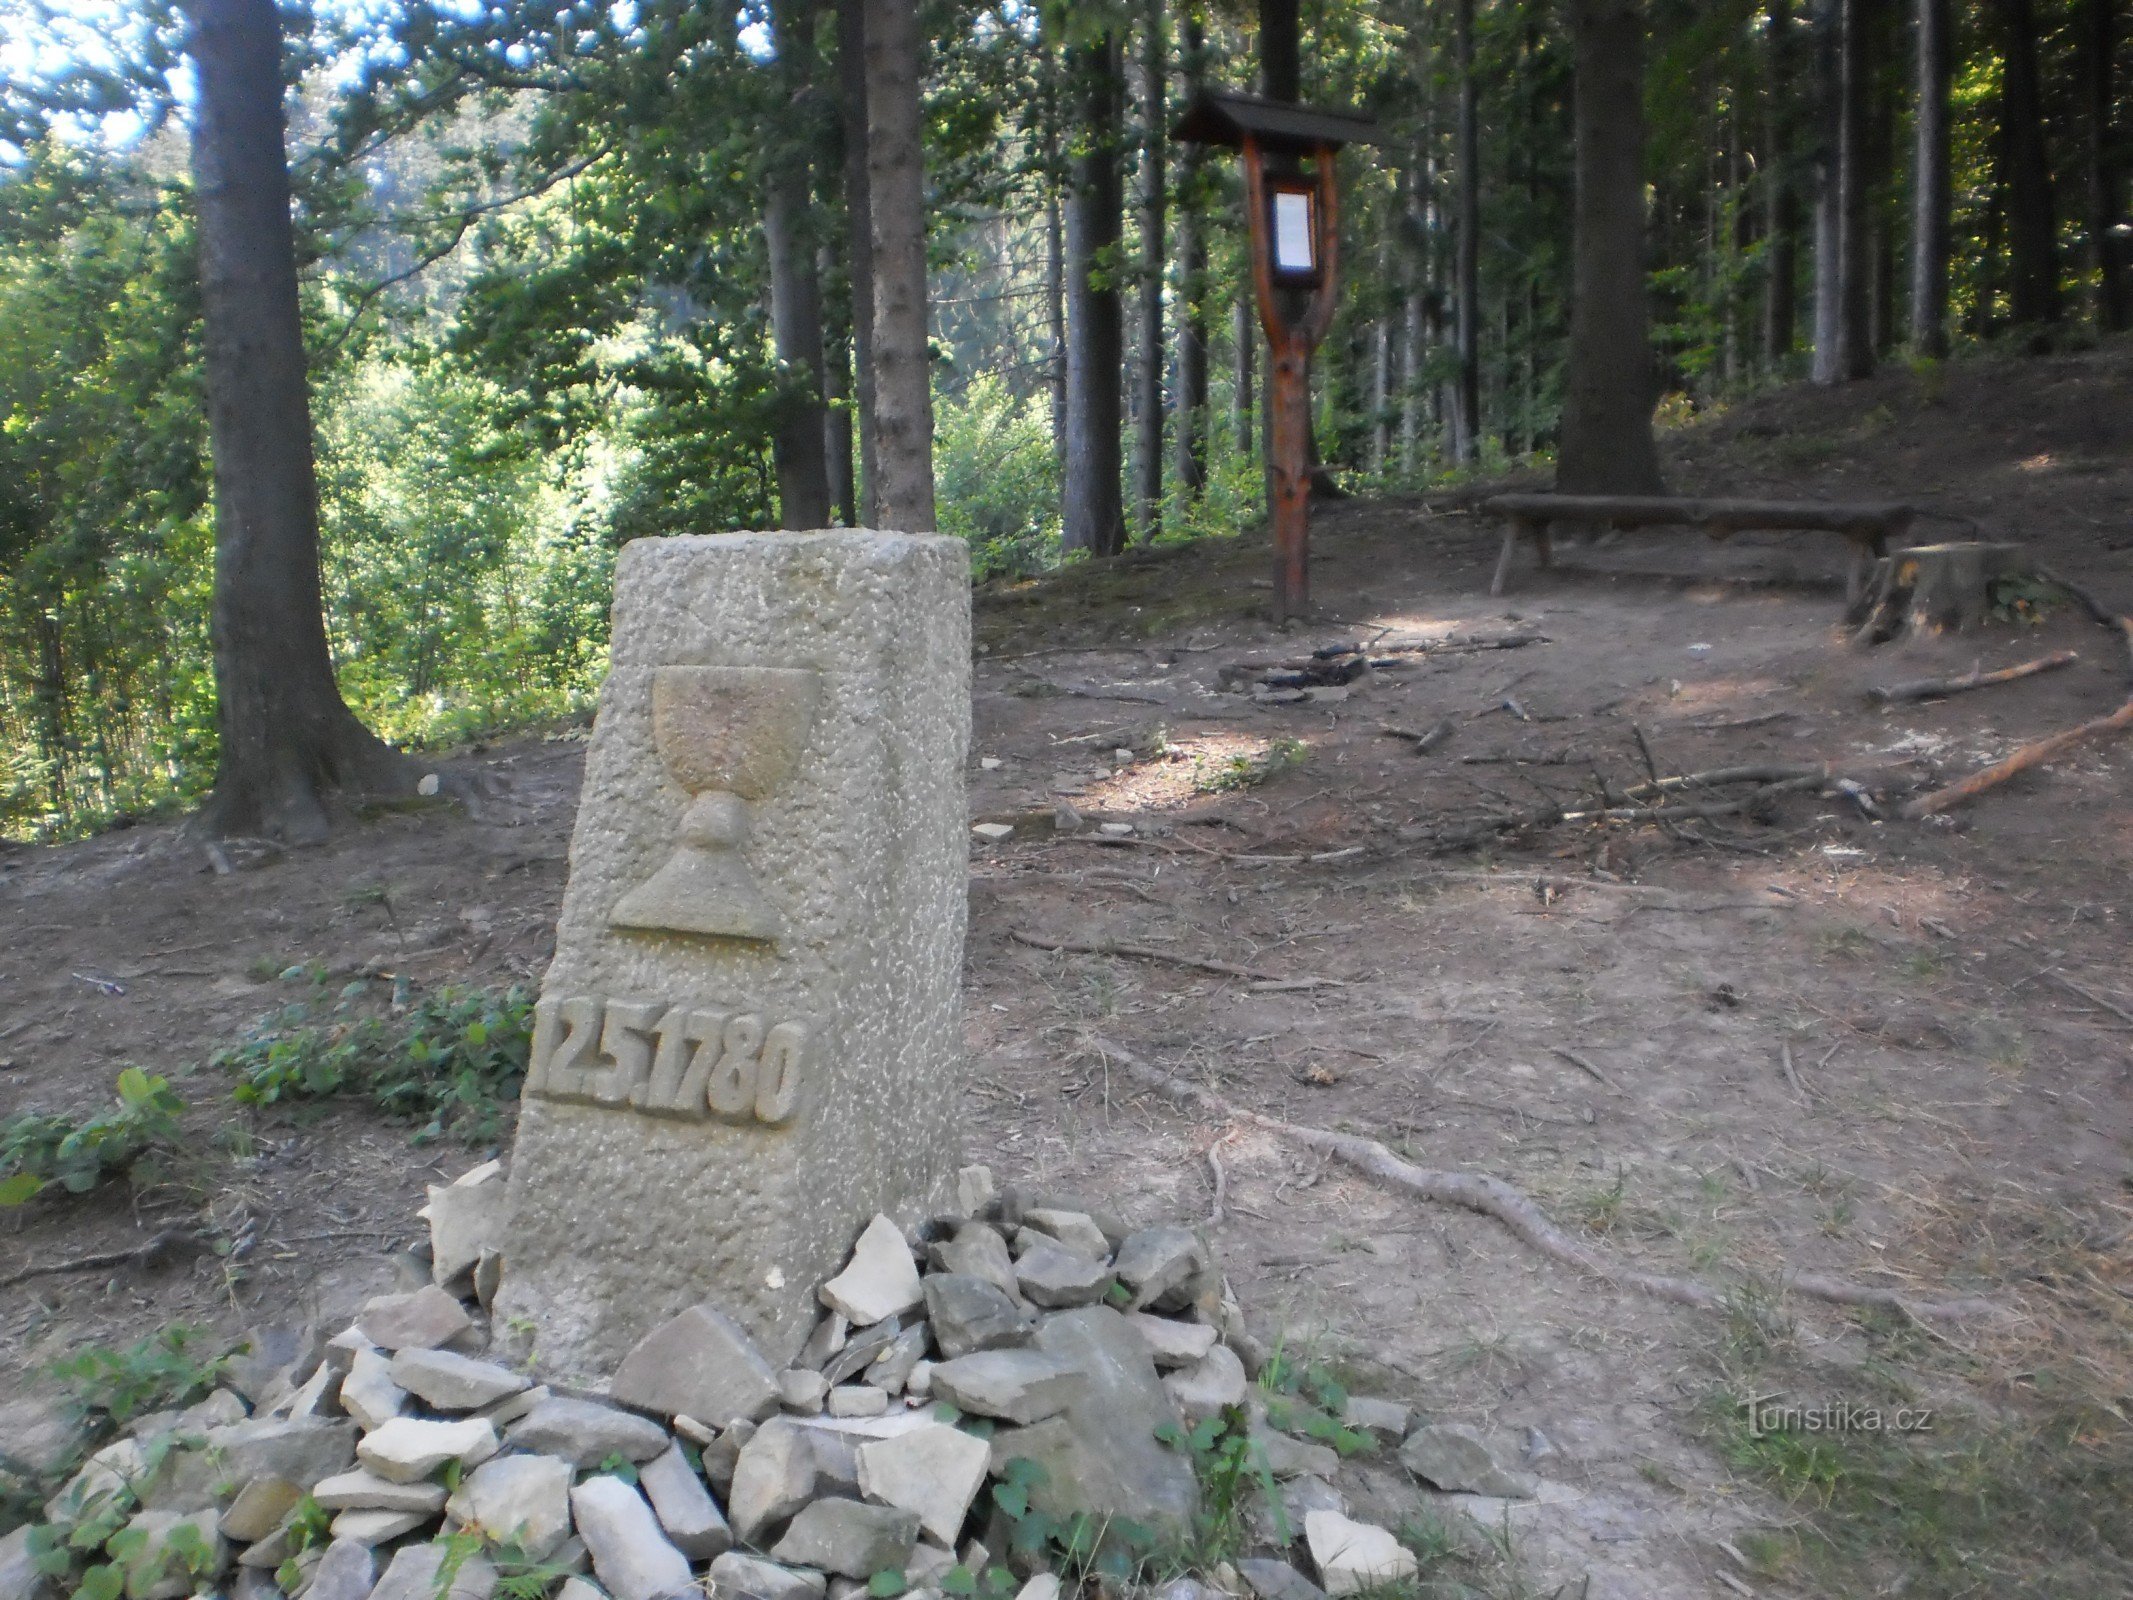 Emlékmű az evangélikusok titkos találkozójára Vsetínskben, Seninkában